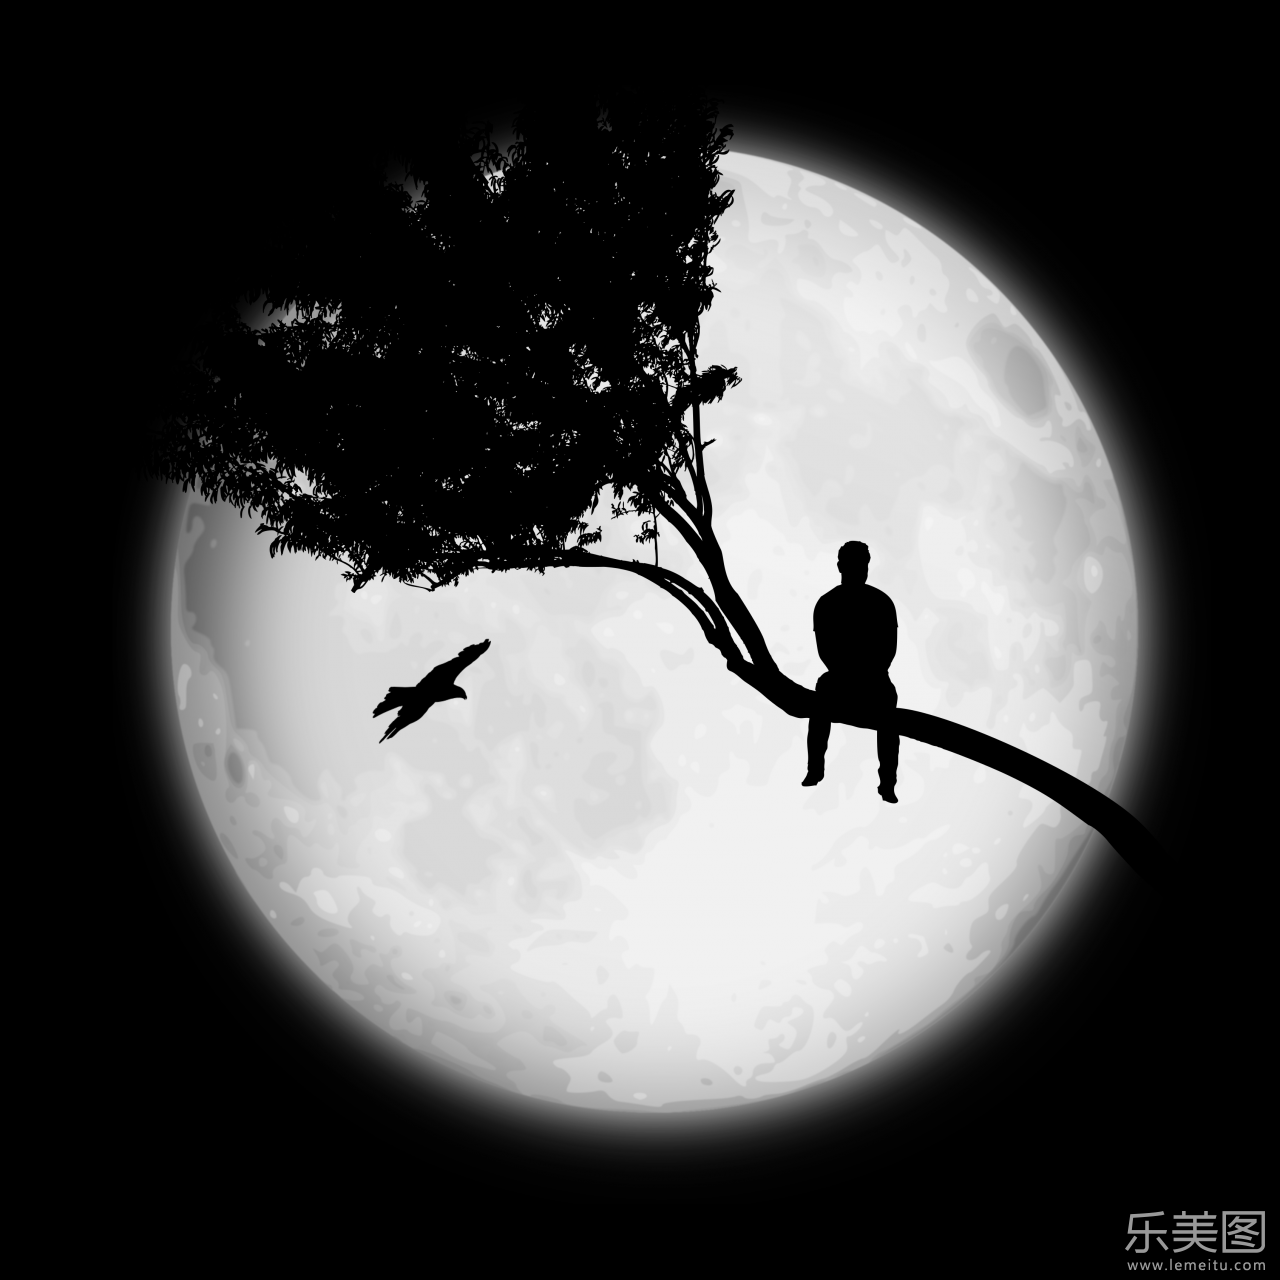 收录时间: 2018-04-09 作品简介 在黑夜巨大的月亮下有着一个孤单的人